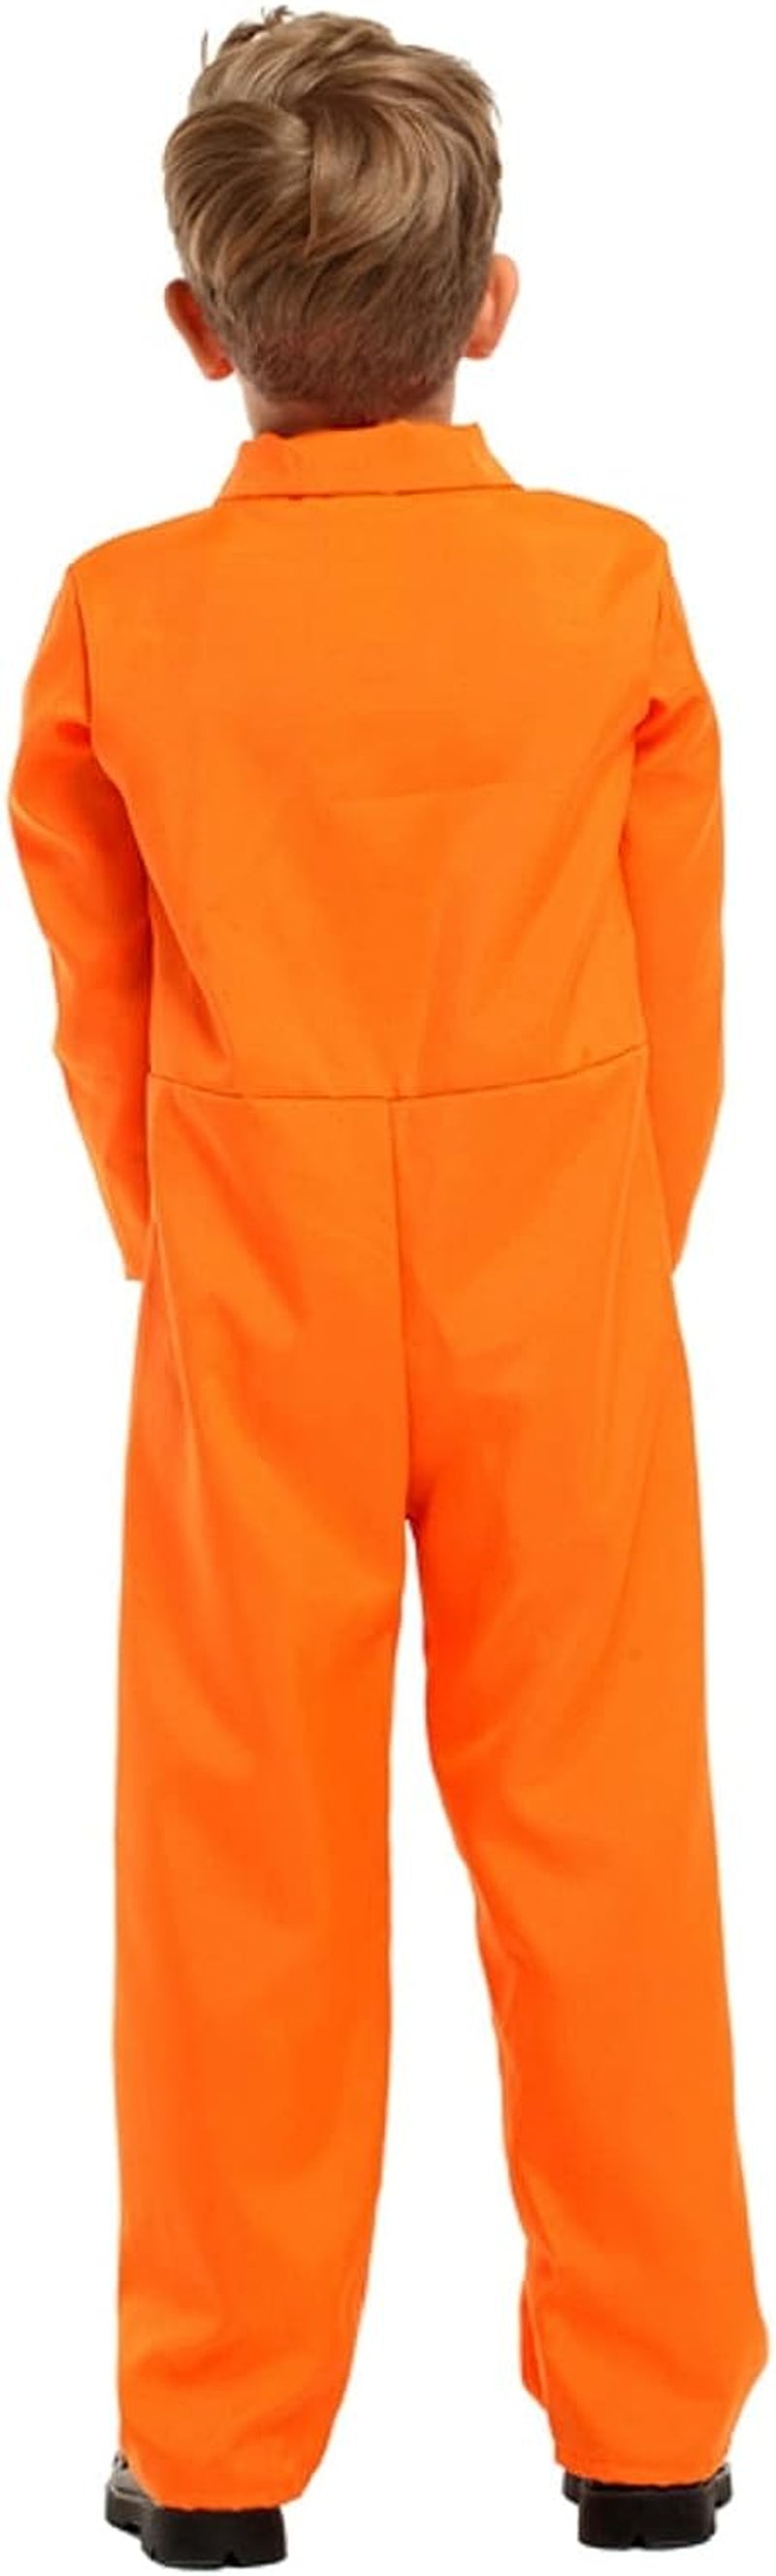 ZNTU Prisoner Costume Kids,Orange Prisoner Jumpsuit with Handcuffs,Jailbird Inmate Prison Uniform  ZNTU   